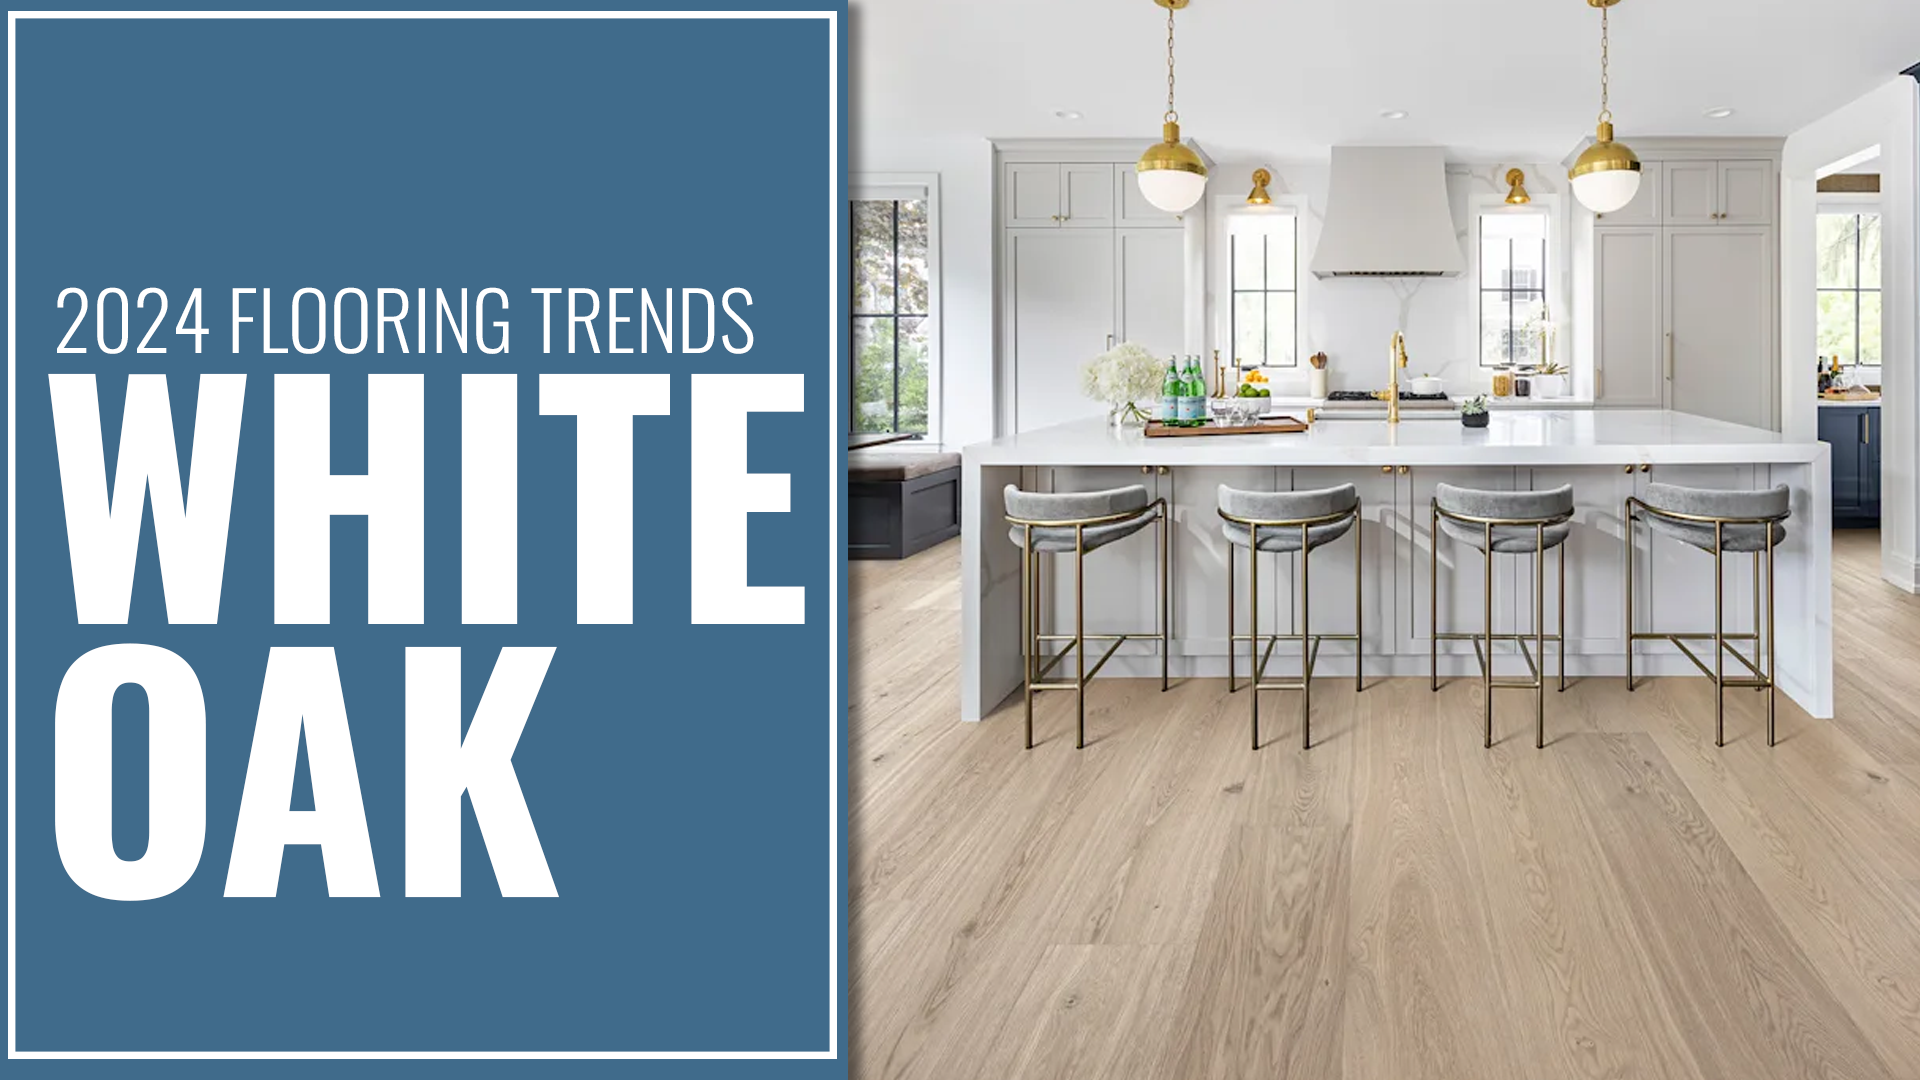 2024 Flooring Trends: White Oak